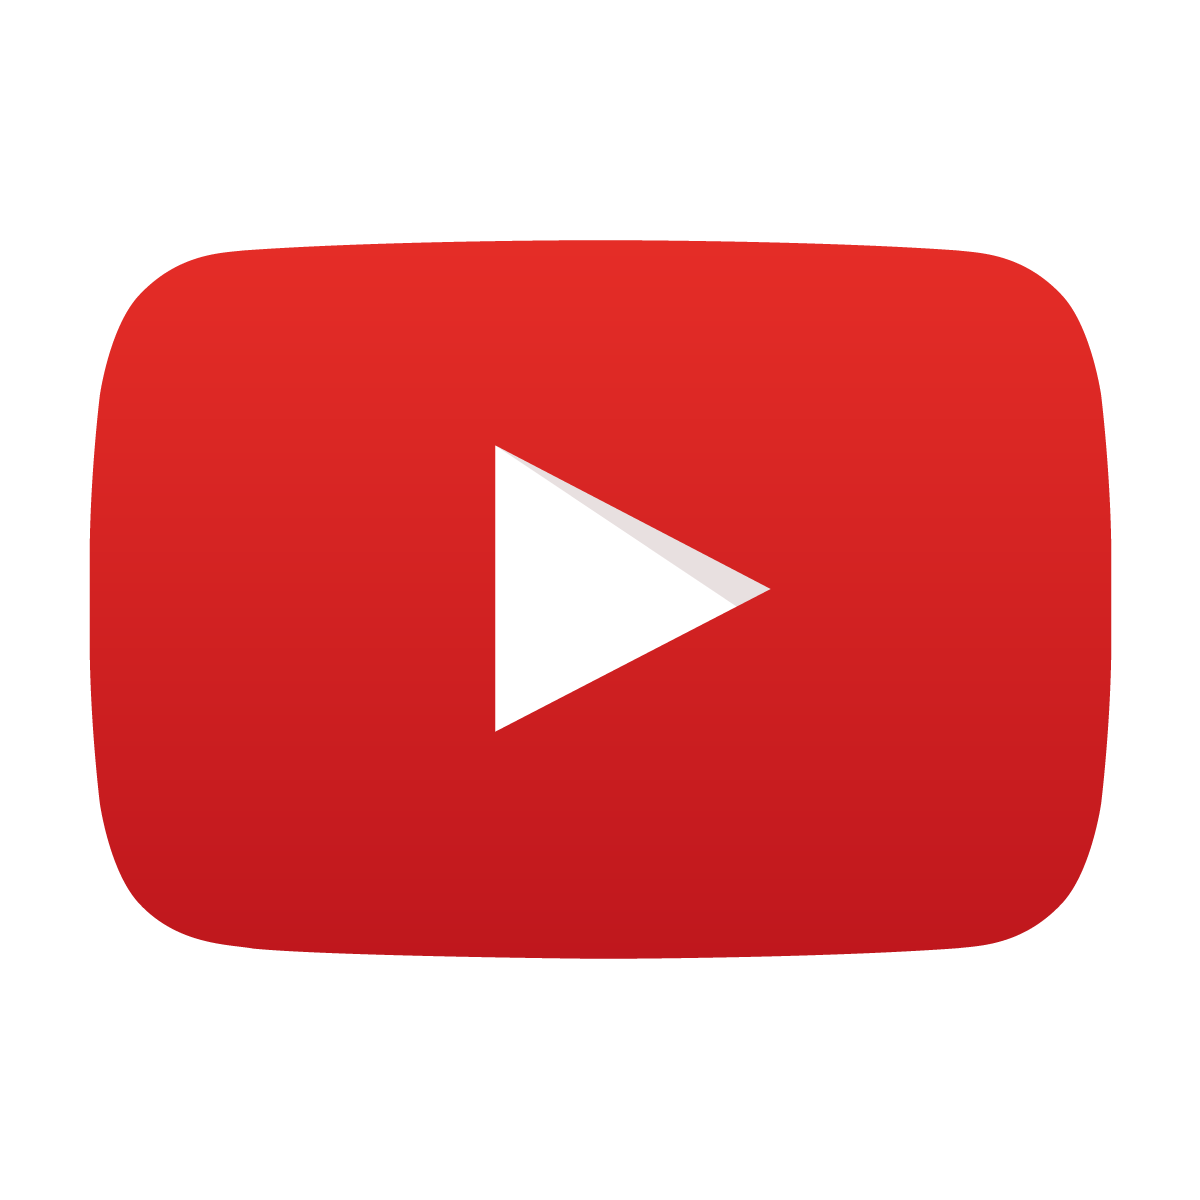 Youtube Logo là biểu tượng của trang web chia sẻ video hàng đầu thế giới, cho phép bạn truy cập vào mọi nội dung và video giải trí, thể thao, tin tức,... Cùng với nó là một cộng đồng đông đảo người dùng và các nghệ sĩ nổi tiếng. Hãy cùng khám phá nhiều điều thú vị trên Youtube.